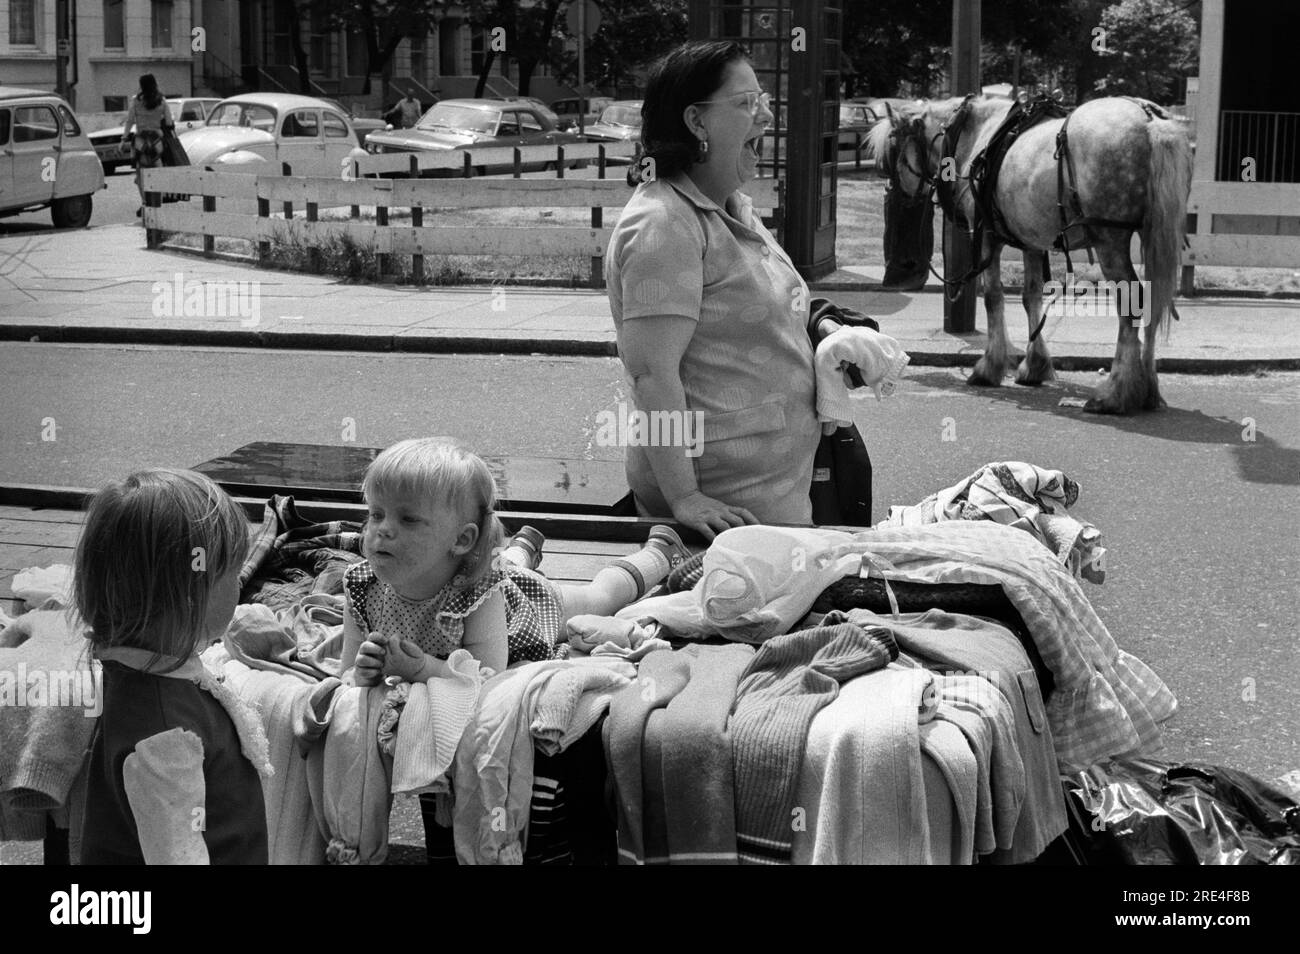 Portobello Road, marché du samedi, Notting Hill West London 1970s. Le bout haut et bon marché de la route. Vieux vêtements vendus par mère avec ses deux enfants. Cheval gitan en arrière-plan. Angleterre. ANNÉES 1975 70 ROYAUME-UNI HOMER SYKES Banque D'Images